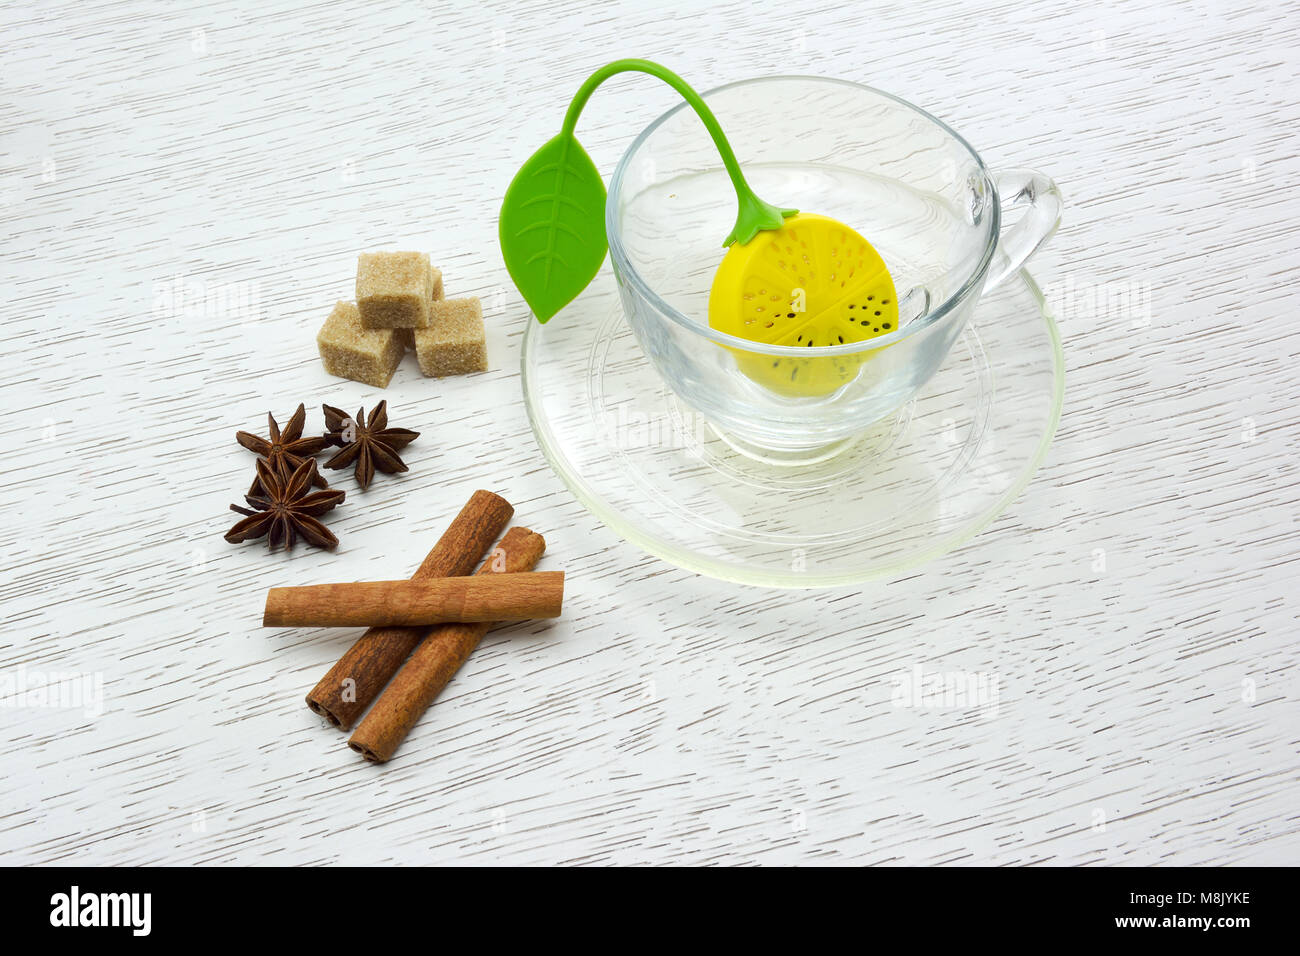 Tasse vide avec du silicone thé feuille de filtre, des morceaux de sucre, la cannelle et l'anis étoilé Banque D'Images